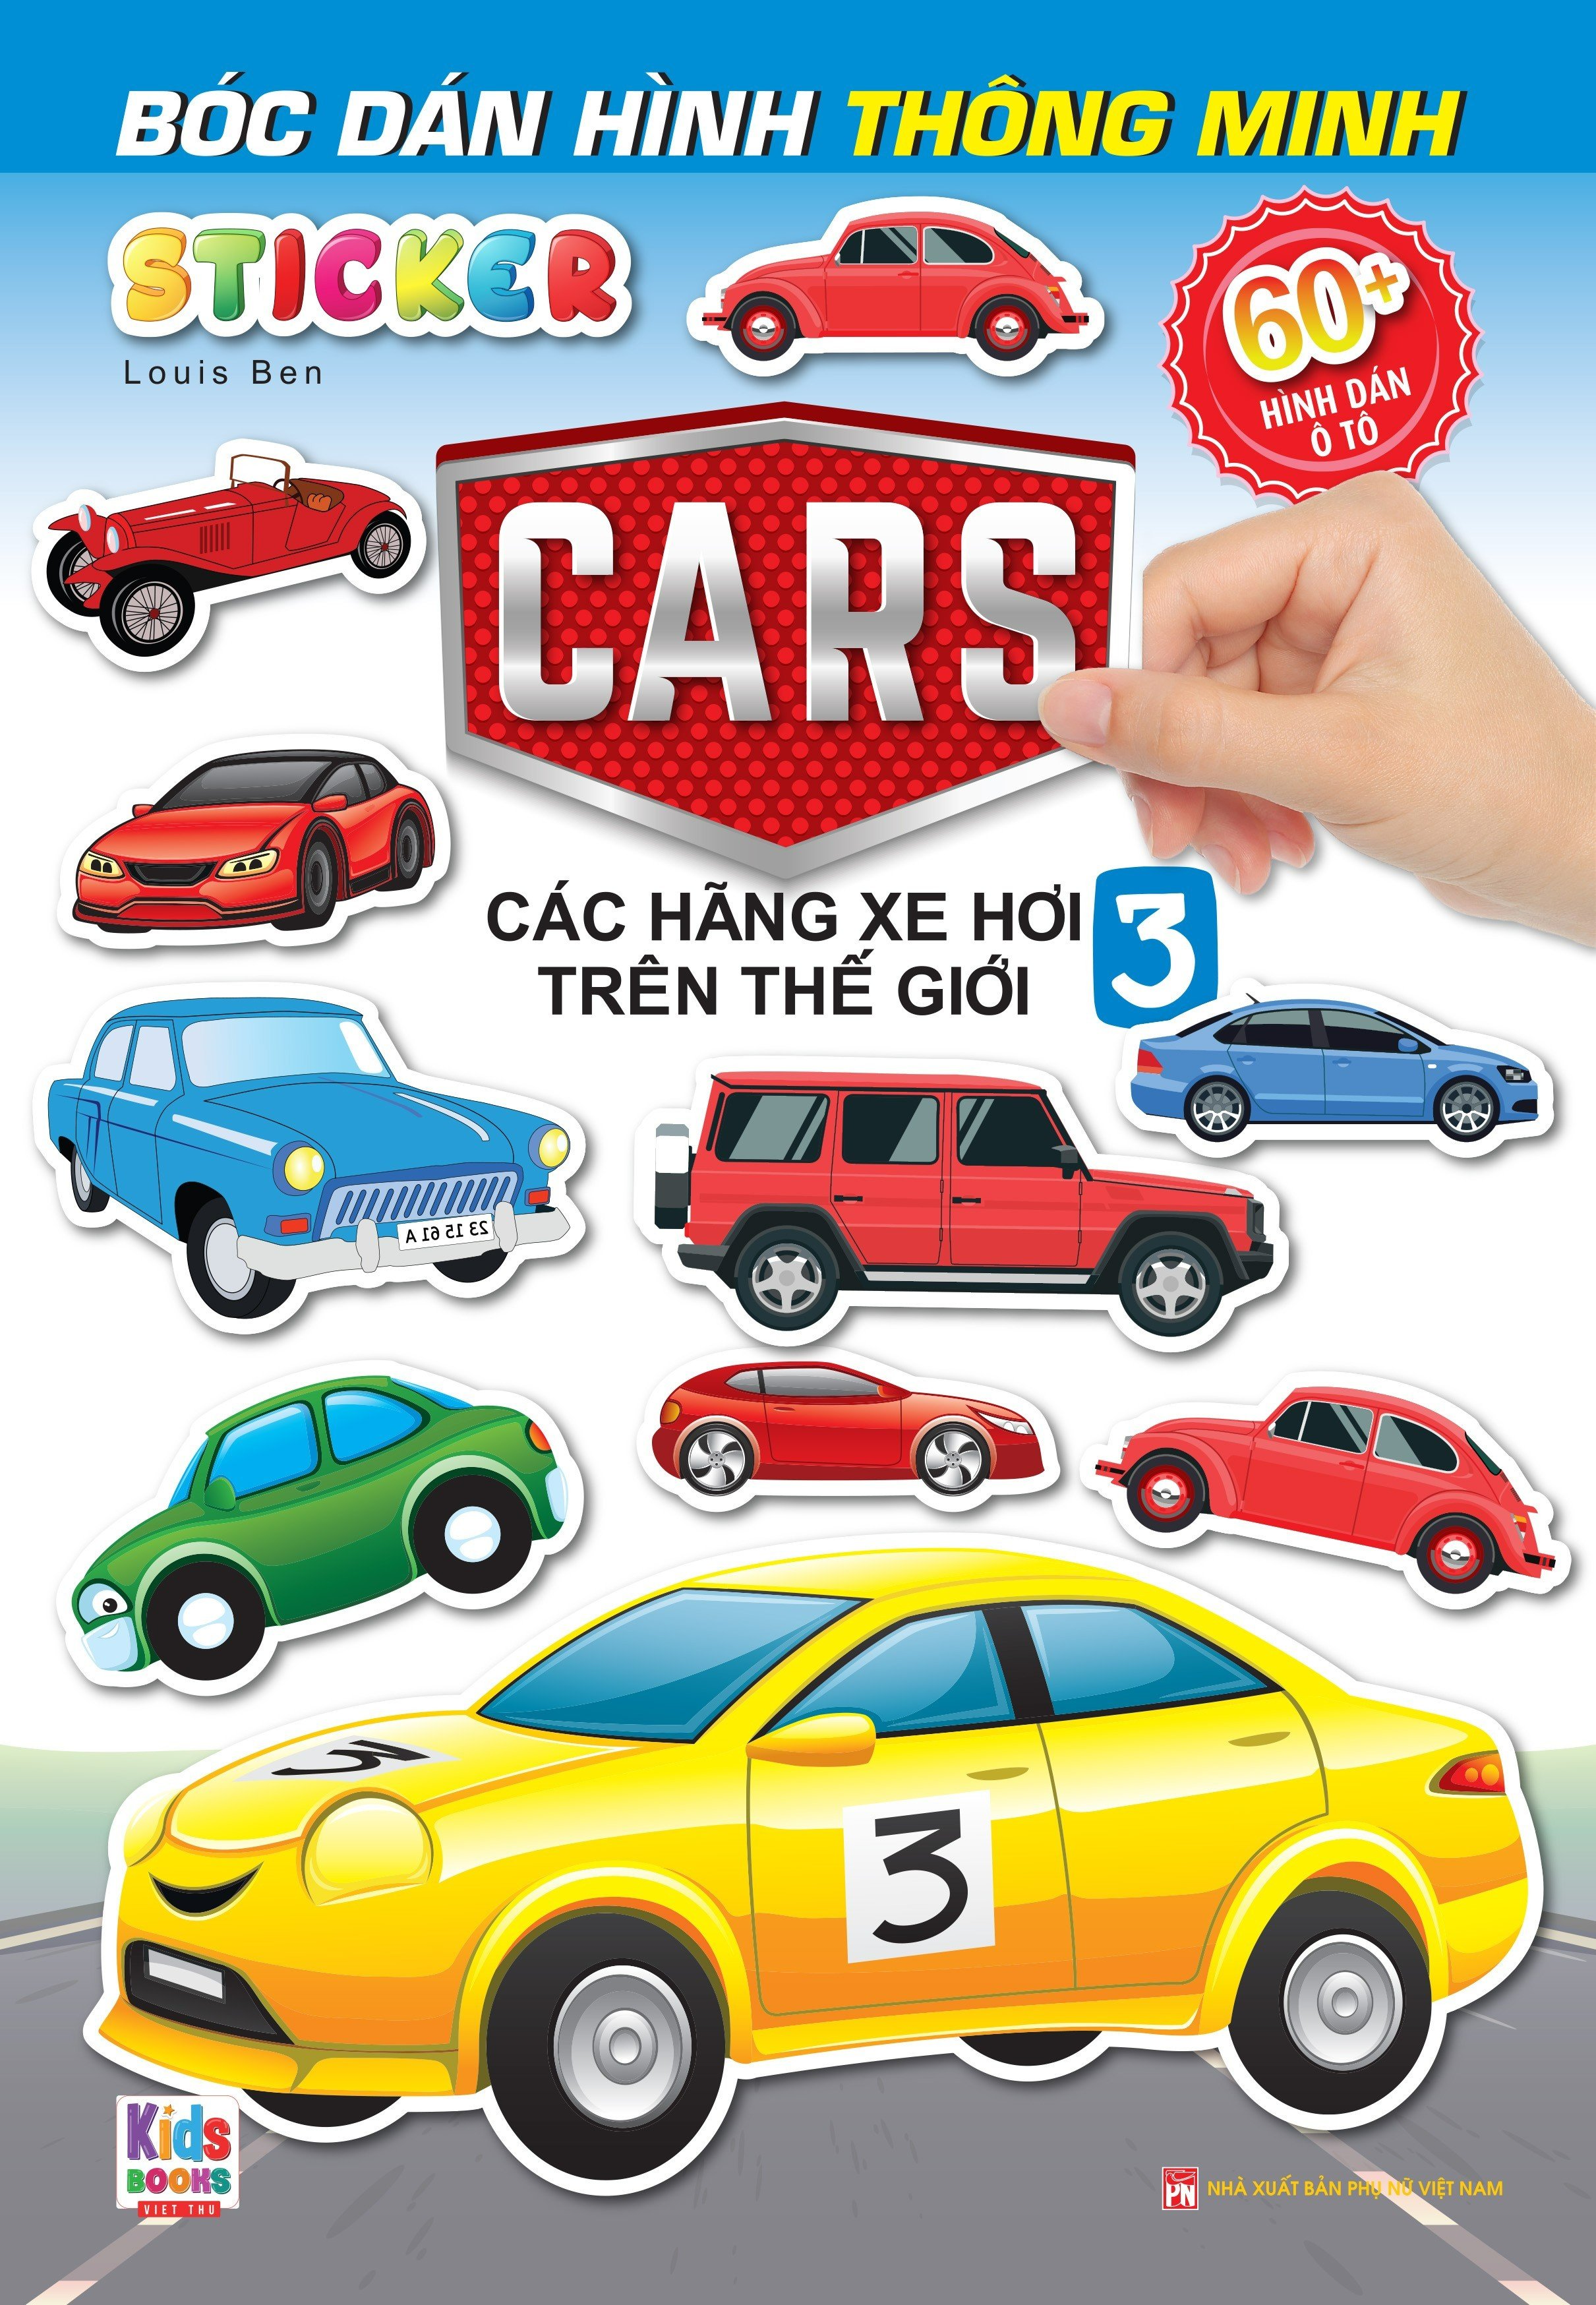 Sách - Combo 4 Cuốn Bóc Dán Hình Sticker Thông Minh - Cars: Các Hãng Xe Hơi Trên Thế Giới